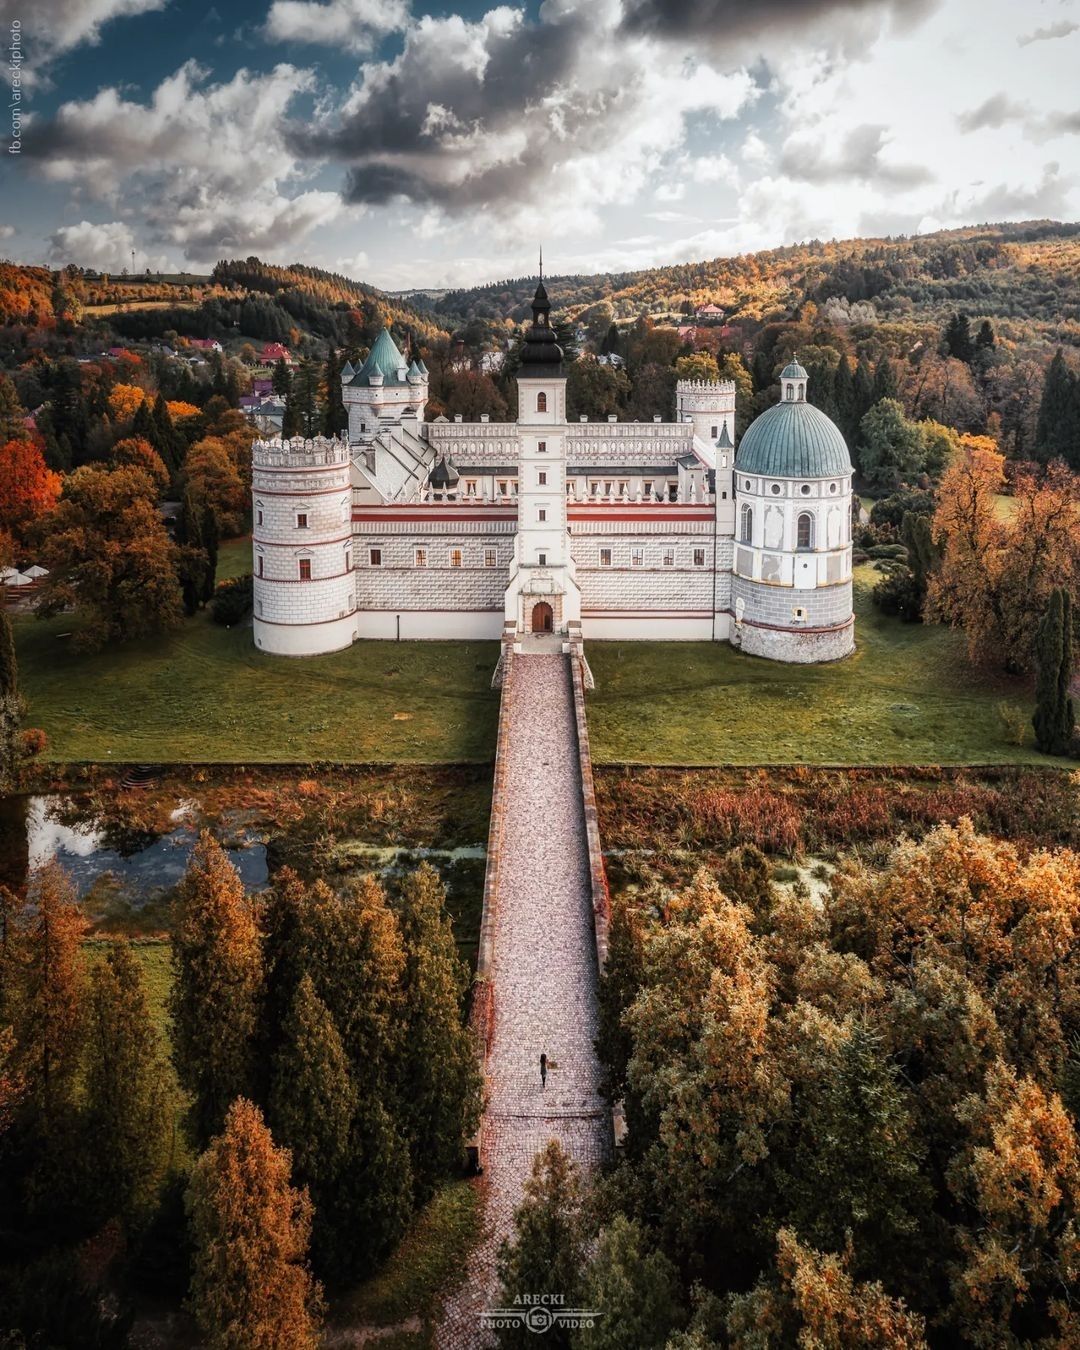 Wiecie, że w Polsce są aż 402 zamki! Macie swój ulubiony?⁠
Dziś prezentujemy Zamek w Krasiczynie, w ujęciu @areckinthesky⁠
⁠
 #zamek #castle #polskiezamki #zabytki #krasiczyn #zamekwkrasiczynie #drone #droneview #droneoftheday #jesień #fall #autumn